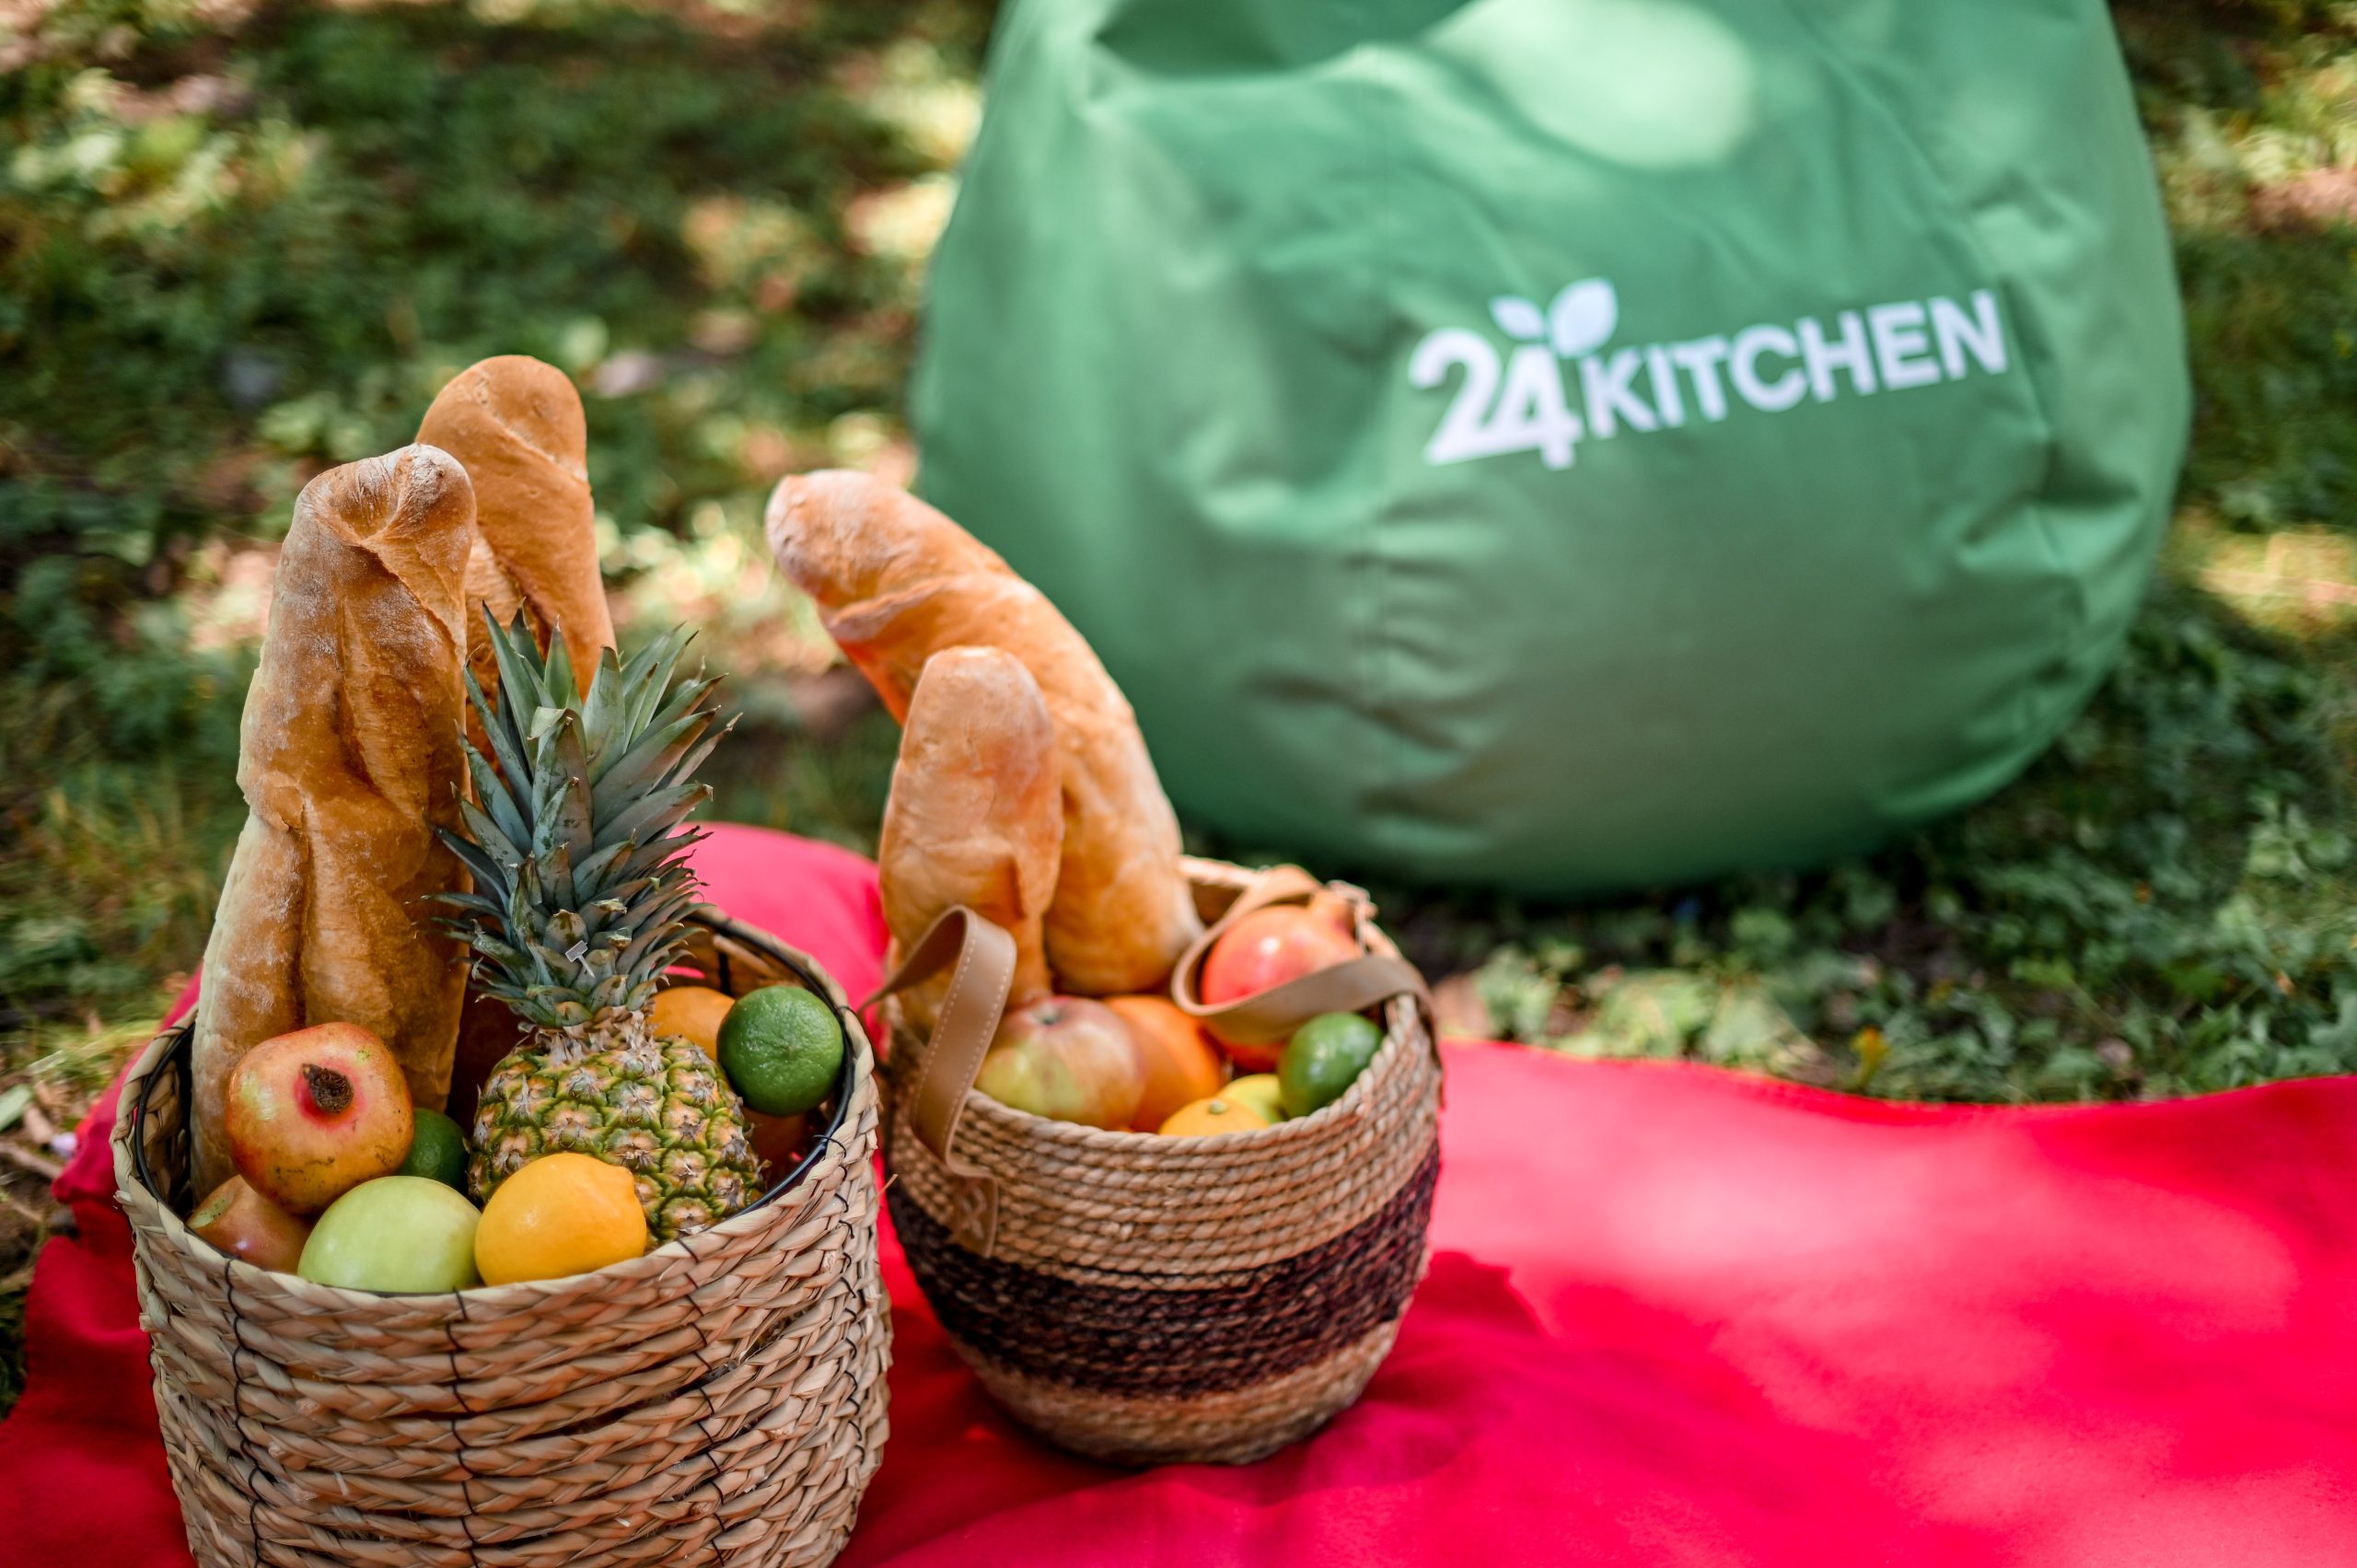 UKI 9545 scaled 24Kitchen Piknik u Bašti – iskoristite priliku da kažete zbogom letu, uz najukusnija jela i sjajnu muziku